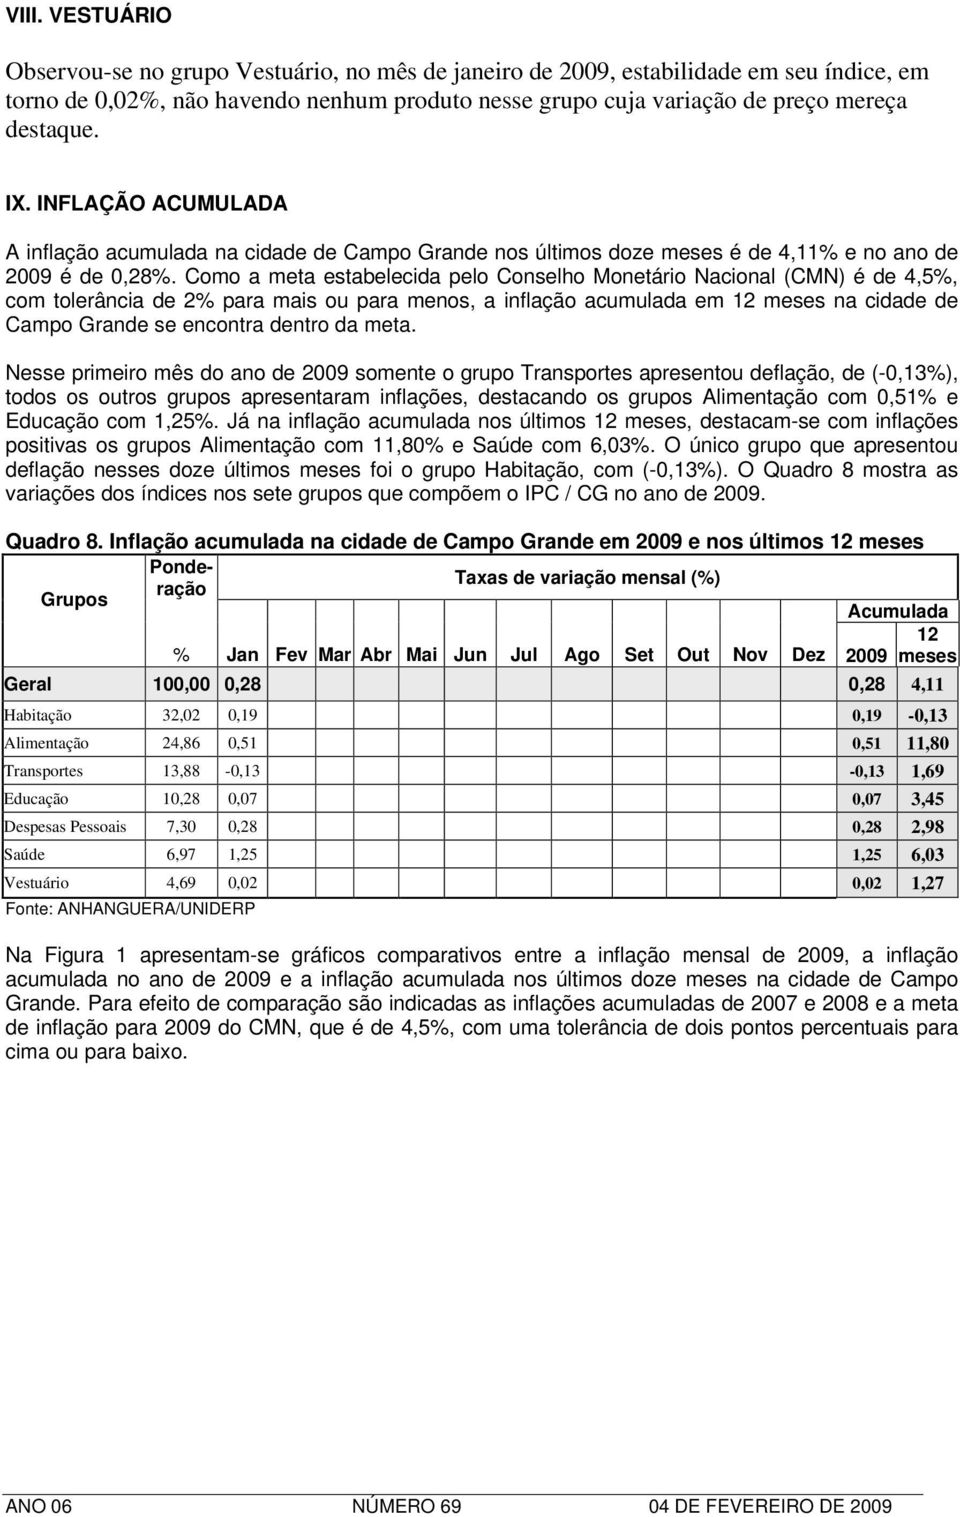 Como a meta estabelecida pelo Conselho Monetário Nacional (CMN) é de 4,5%, com tolerância de 2% para mais ou para menos, a inflação acumulada em 12 meses na cidade de Campo Grande se encontra dentro